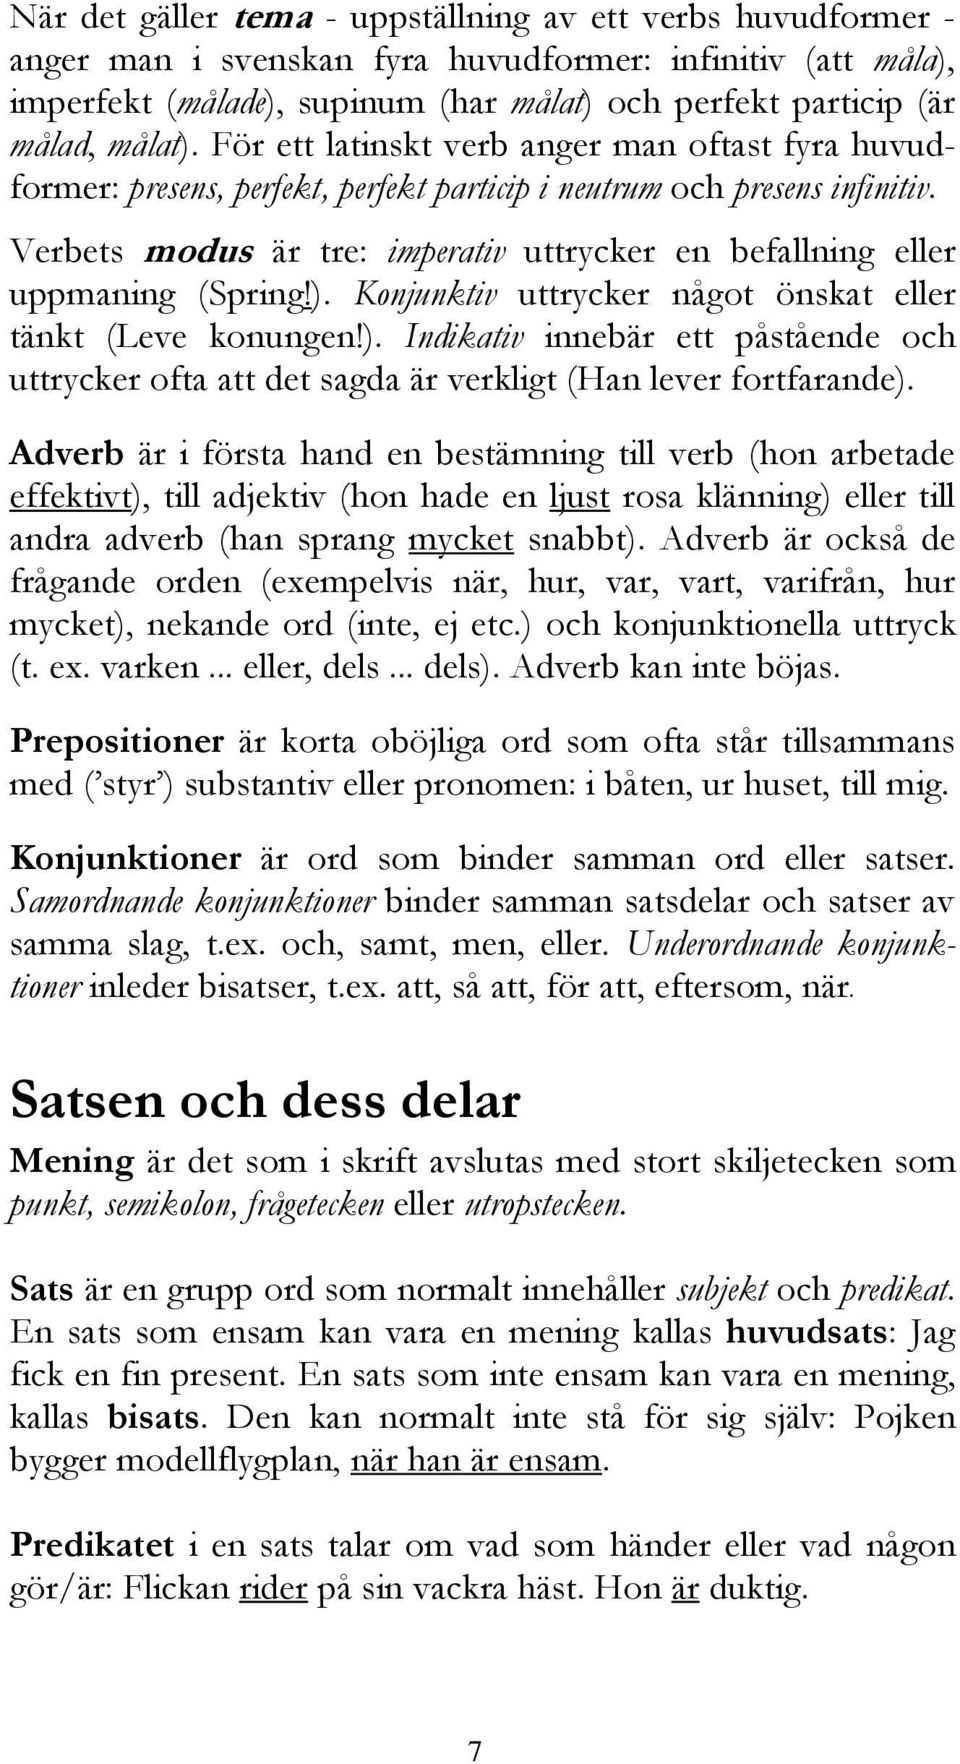 latinskt Ett verb svenskt anger substantiv man oftast utgår fyra huvudformer: grundform, presens, som perfekt, på latin perfekt motsvaras particip i neutrum av nominativ. och presens Om infinitiv.